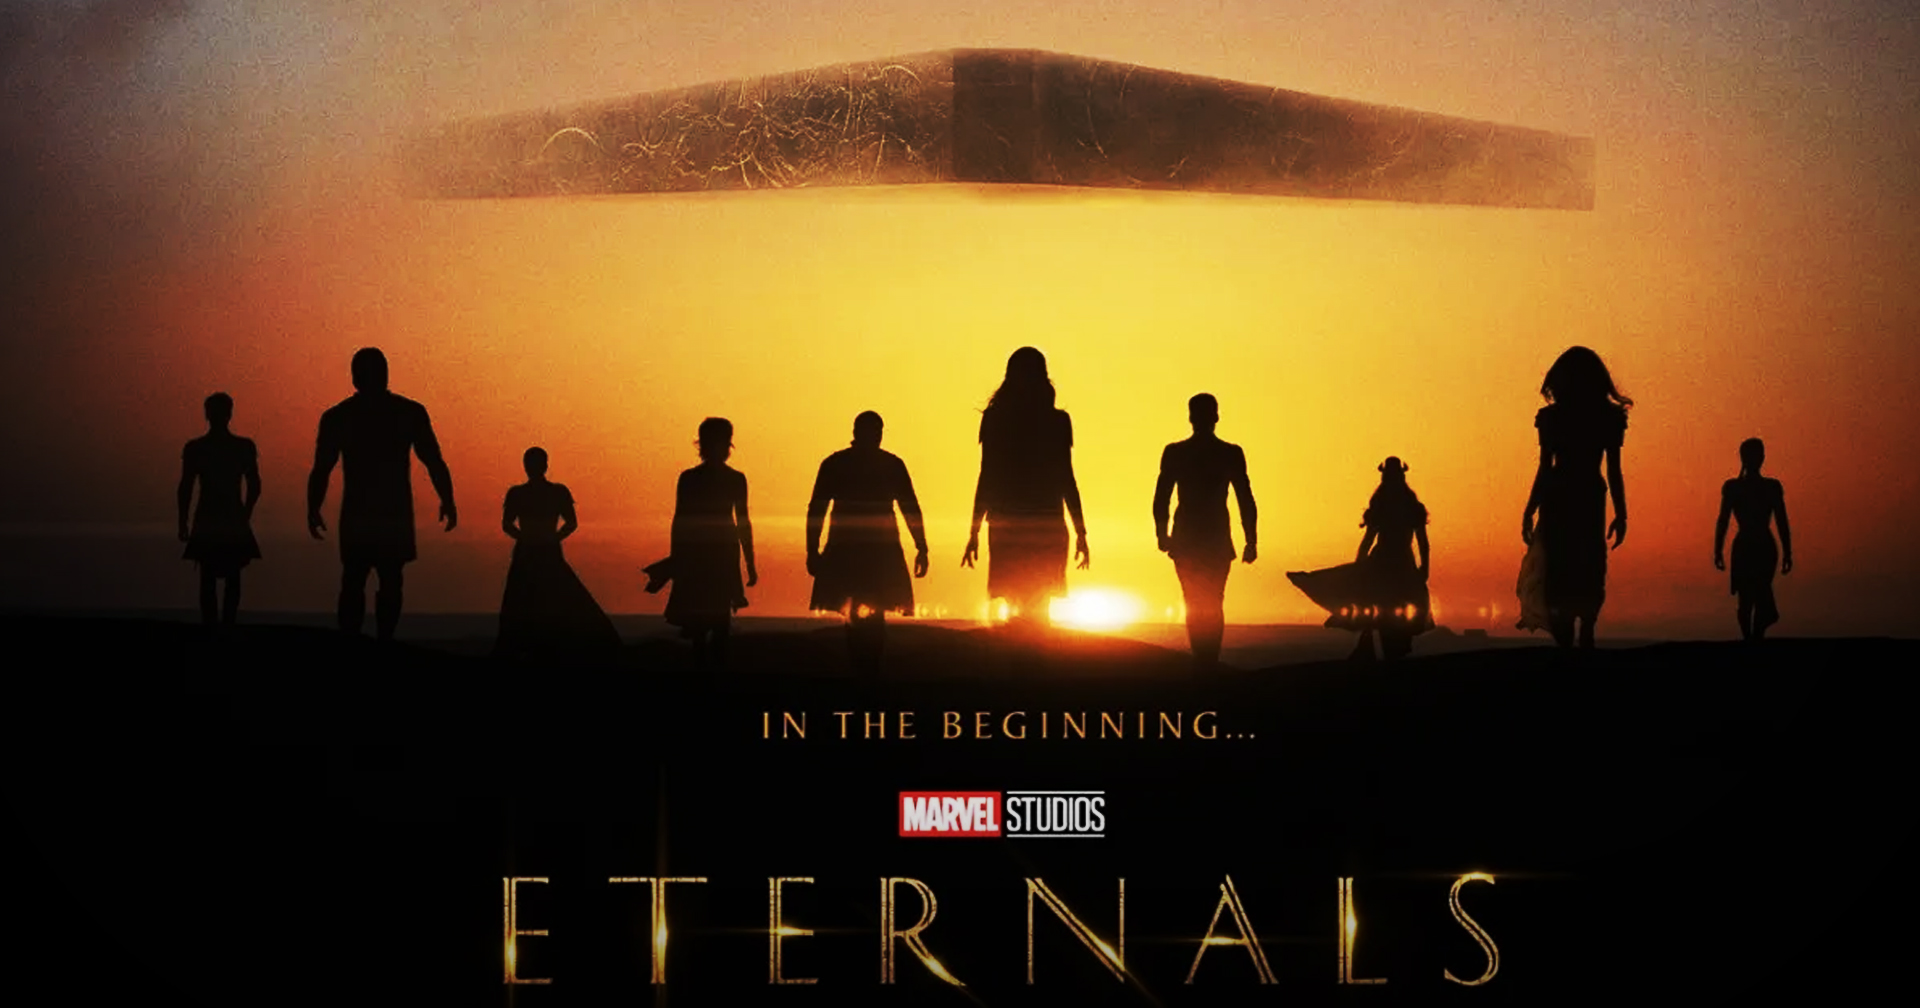 ‘Eternals’ ขึ้นแท่นเป็นหนังซูเปอร์ฮีโรที่ยอดการสตรีมสูงที่สุดของปี 2022